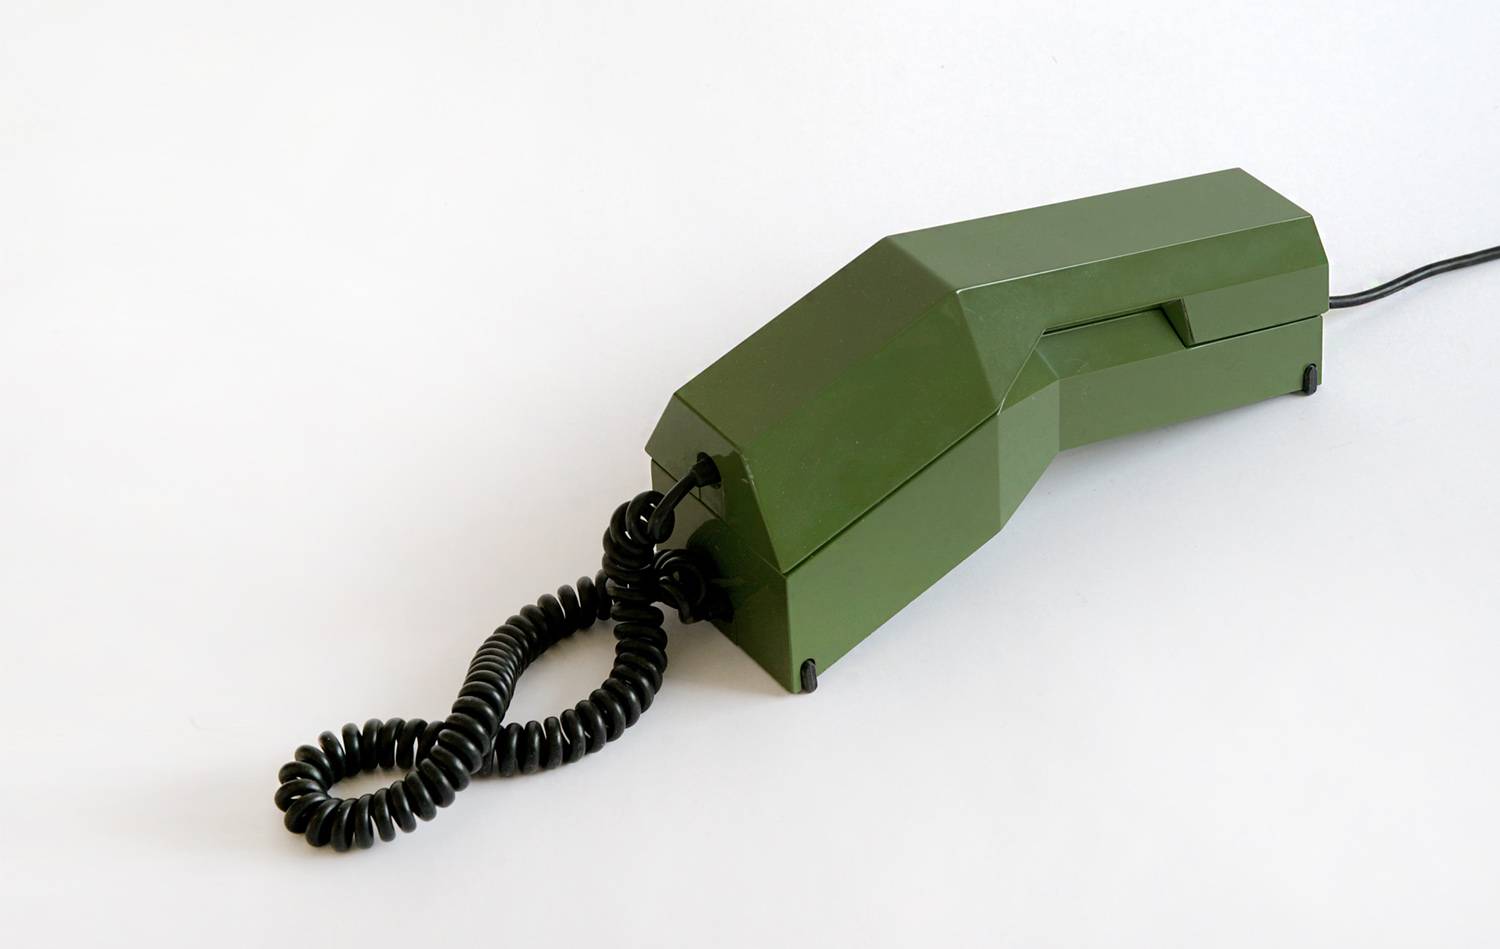 ▲ Telephone “Rialto”, designed by Giorgetto Giugiaro, Siemens, 1972.